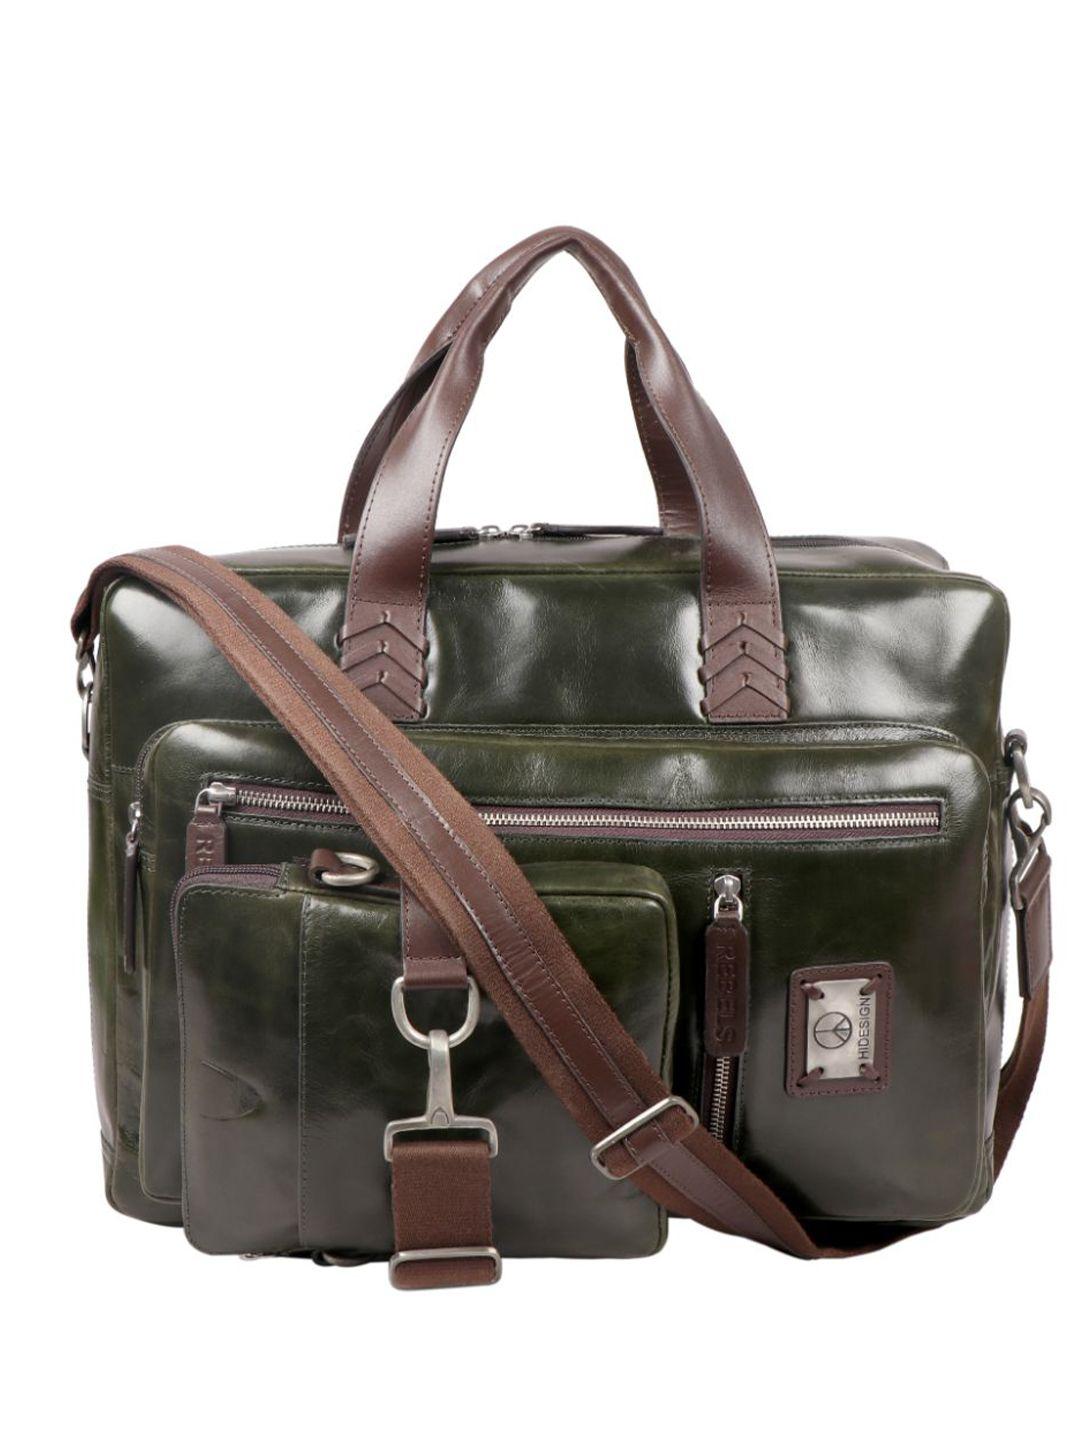 hidesign leather messenger bag